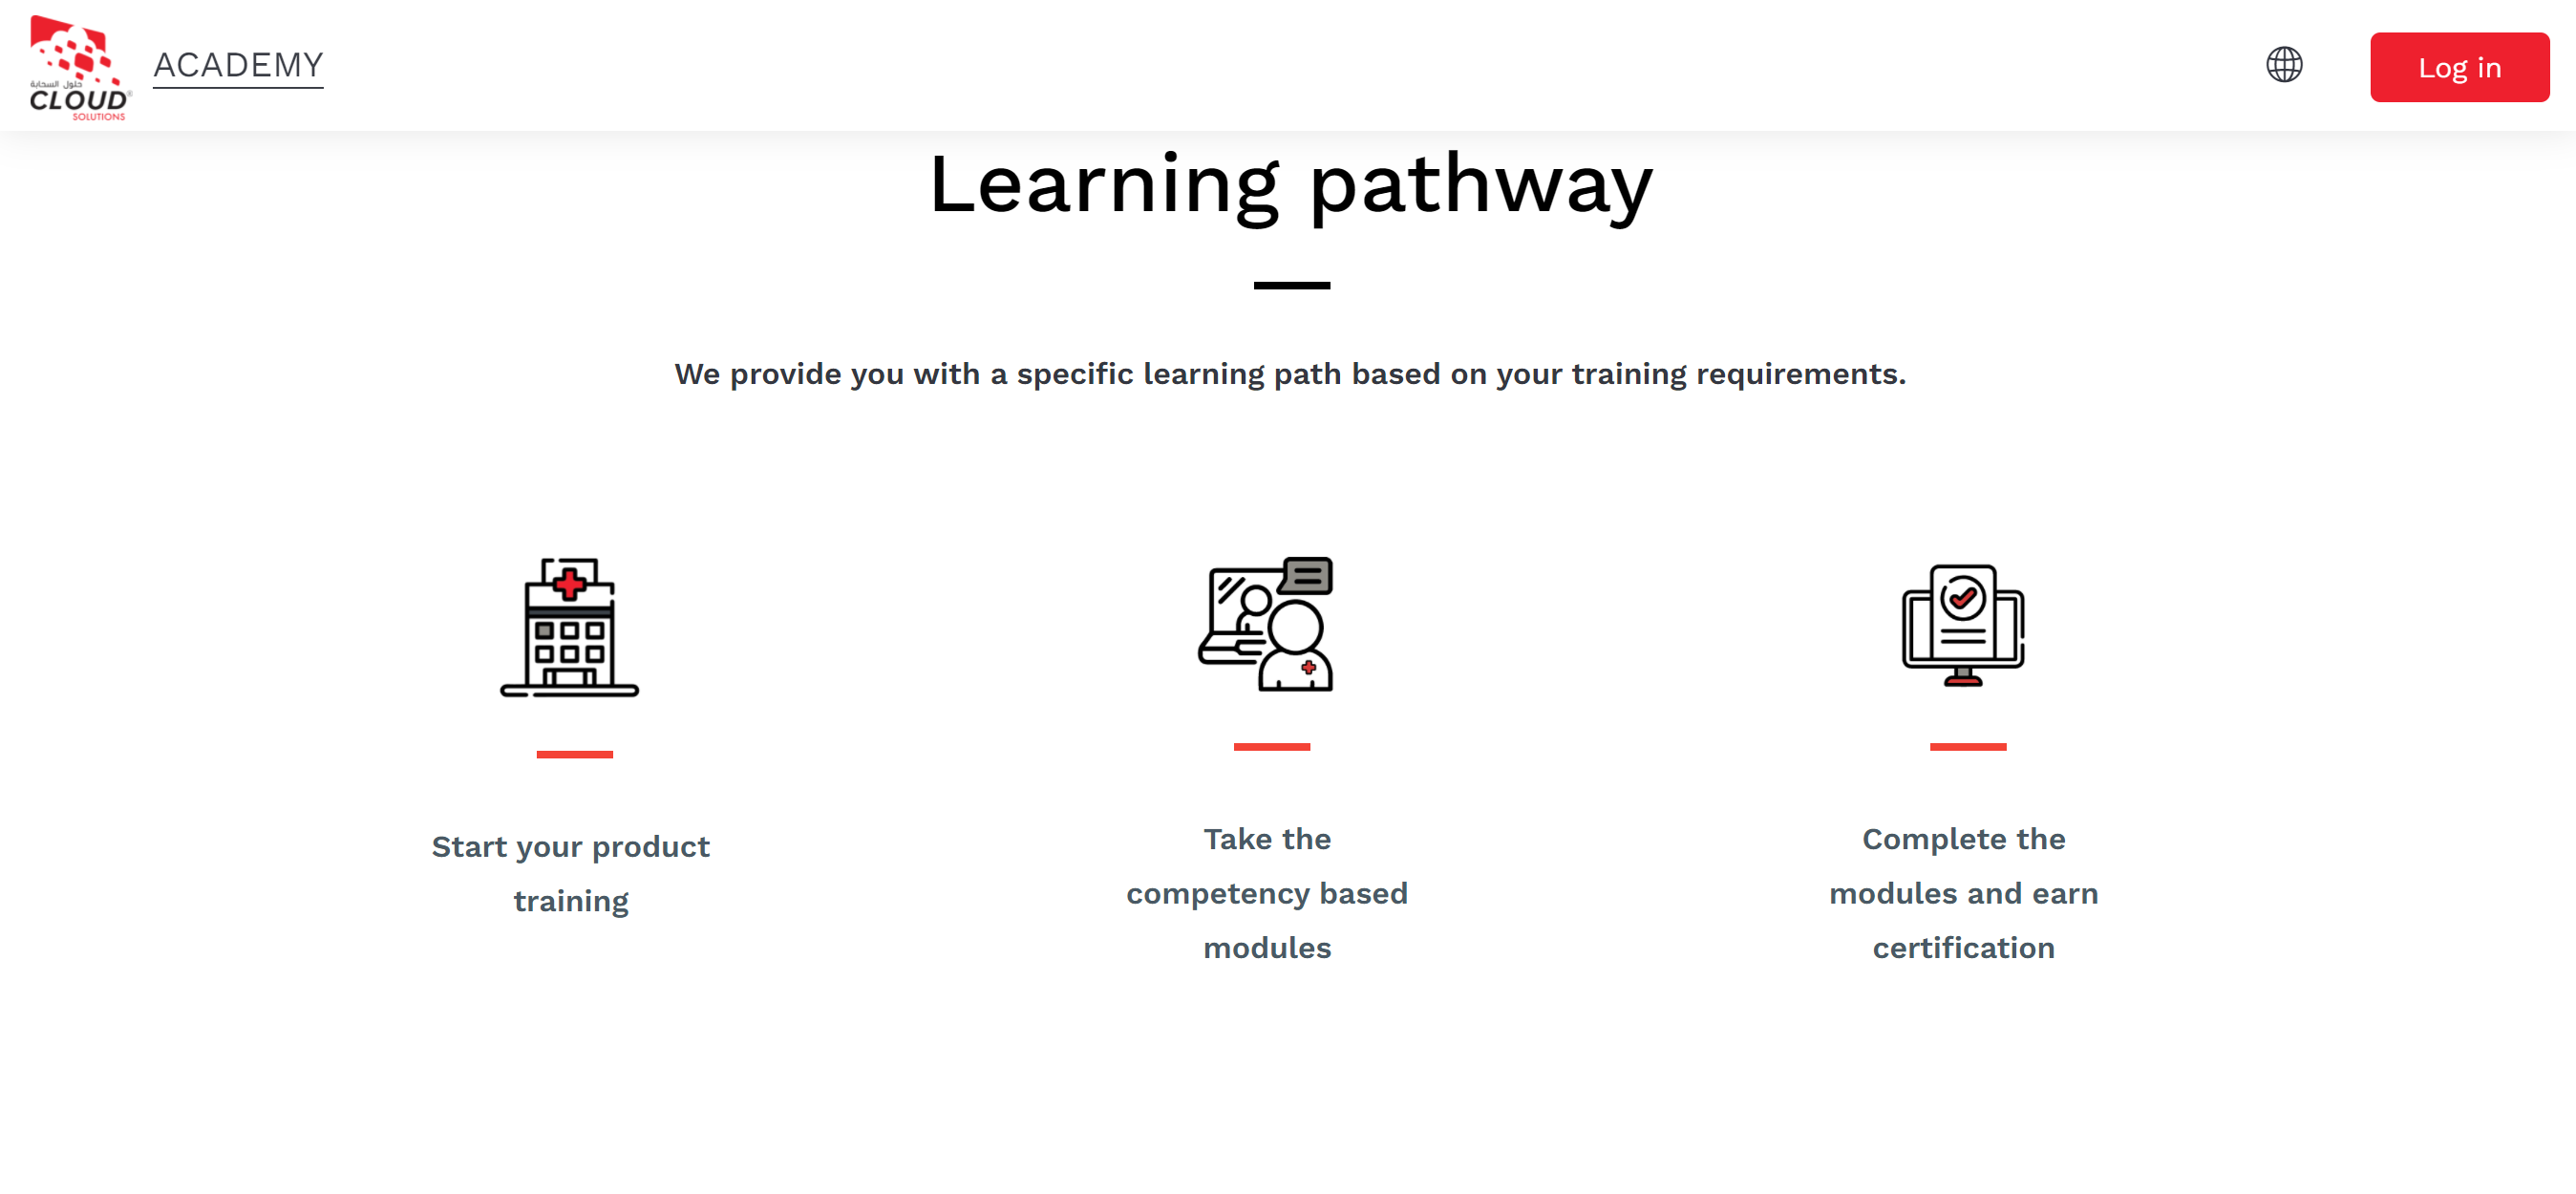 Die Moodle-Site des Cloud Solutions Support zeigt 3 Lernpfade, die für ihre Benutzer verfügbar sind, basierend auf ihren Schulungsanforderungen: Starten Sie Ihre Produktschulung; Nehmen Sie an den kompetenzbasierten Modulen teil; Schließen Sie die Module ab und erhalten Sie eine Zertifizierung